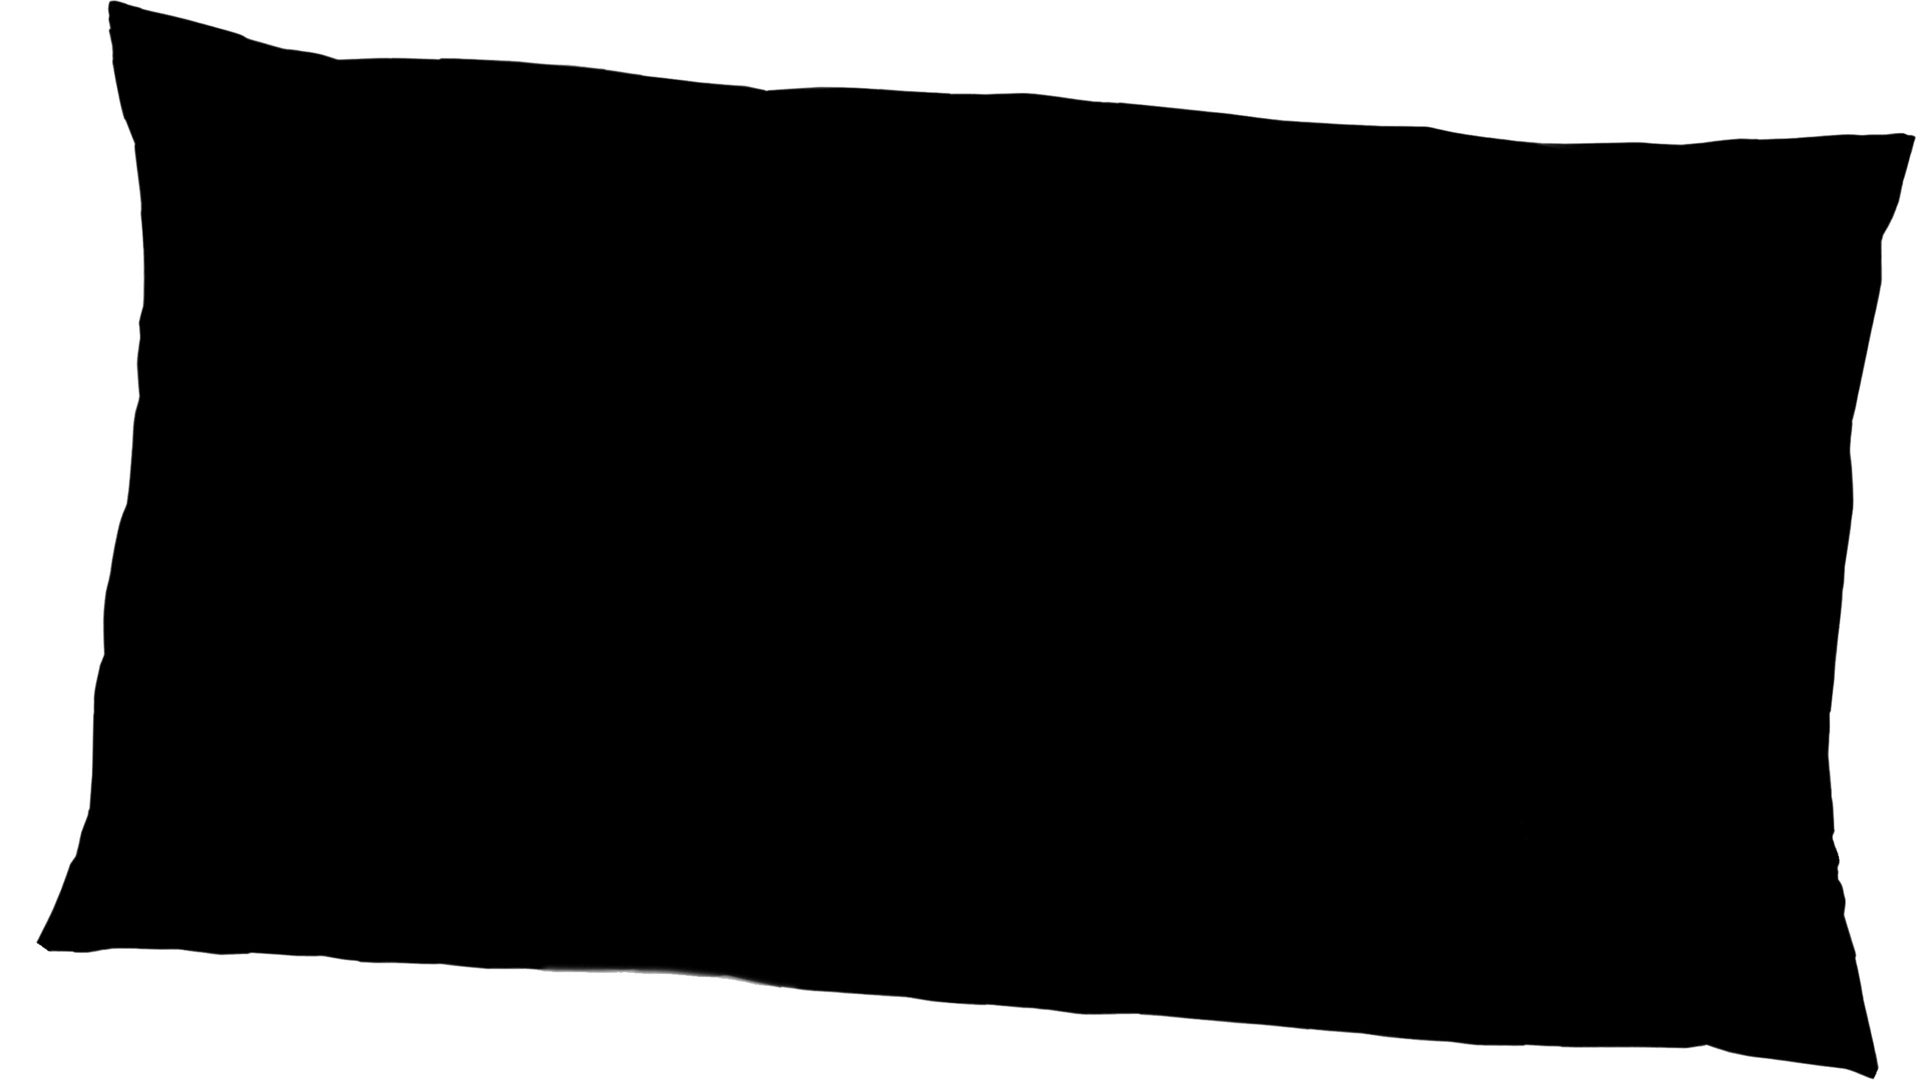 Kissenbezug /-hülle H.g. hahn haustextilien aus Stoff in Schwarz HAHN Luxus-Satin-Kopfkissenbezug Sempre schwarzer Baumwollsatin – ca. 40 x 80 cm